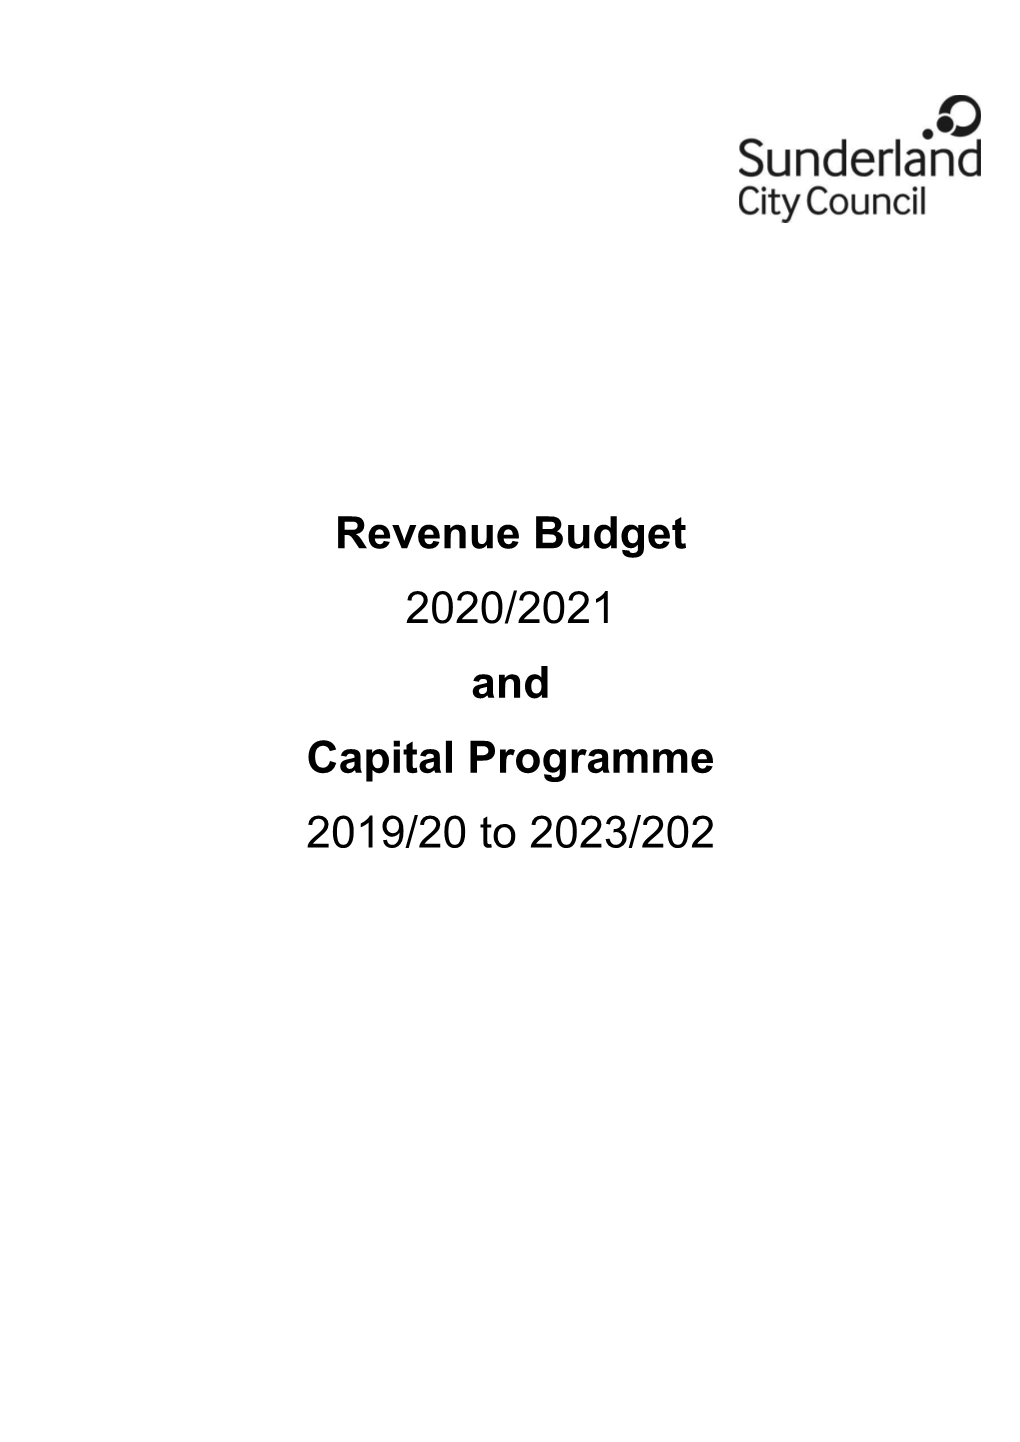 Revenue Budget 2020/2021 and Capital